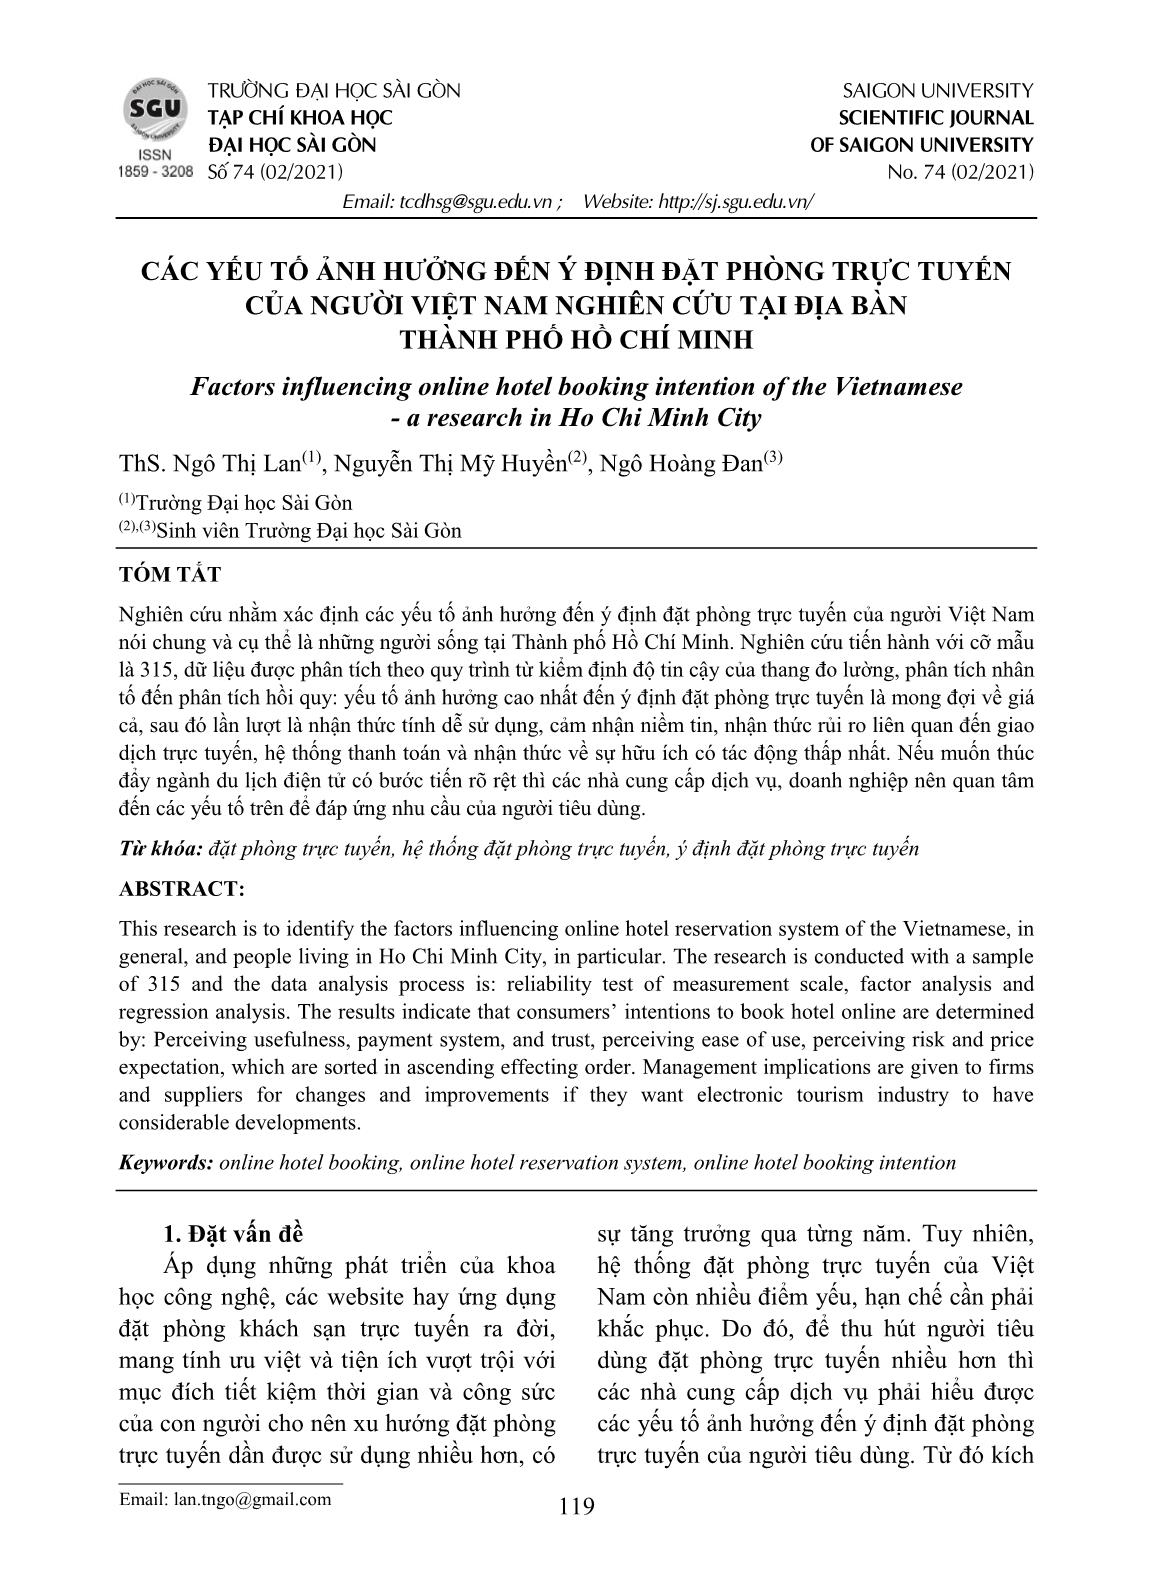 Các yếu tố ảnh hưởng đến ý định đặt phòng trực tuyến của người Việt Nam nghiên cứu tại địa bàn thành phố Hồ Chí Minh trang 1